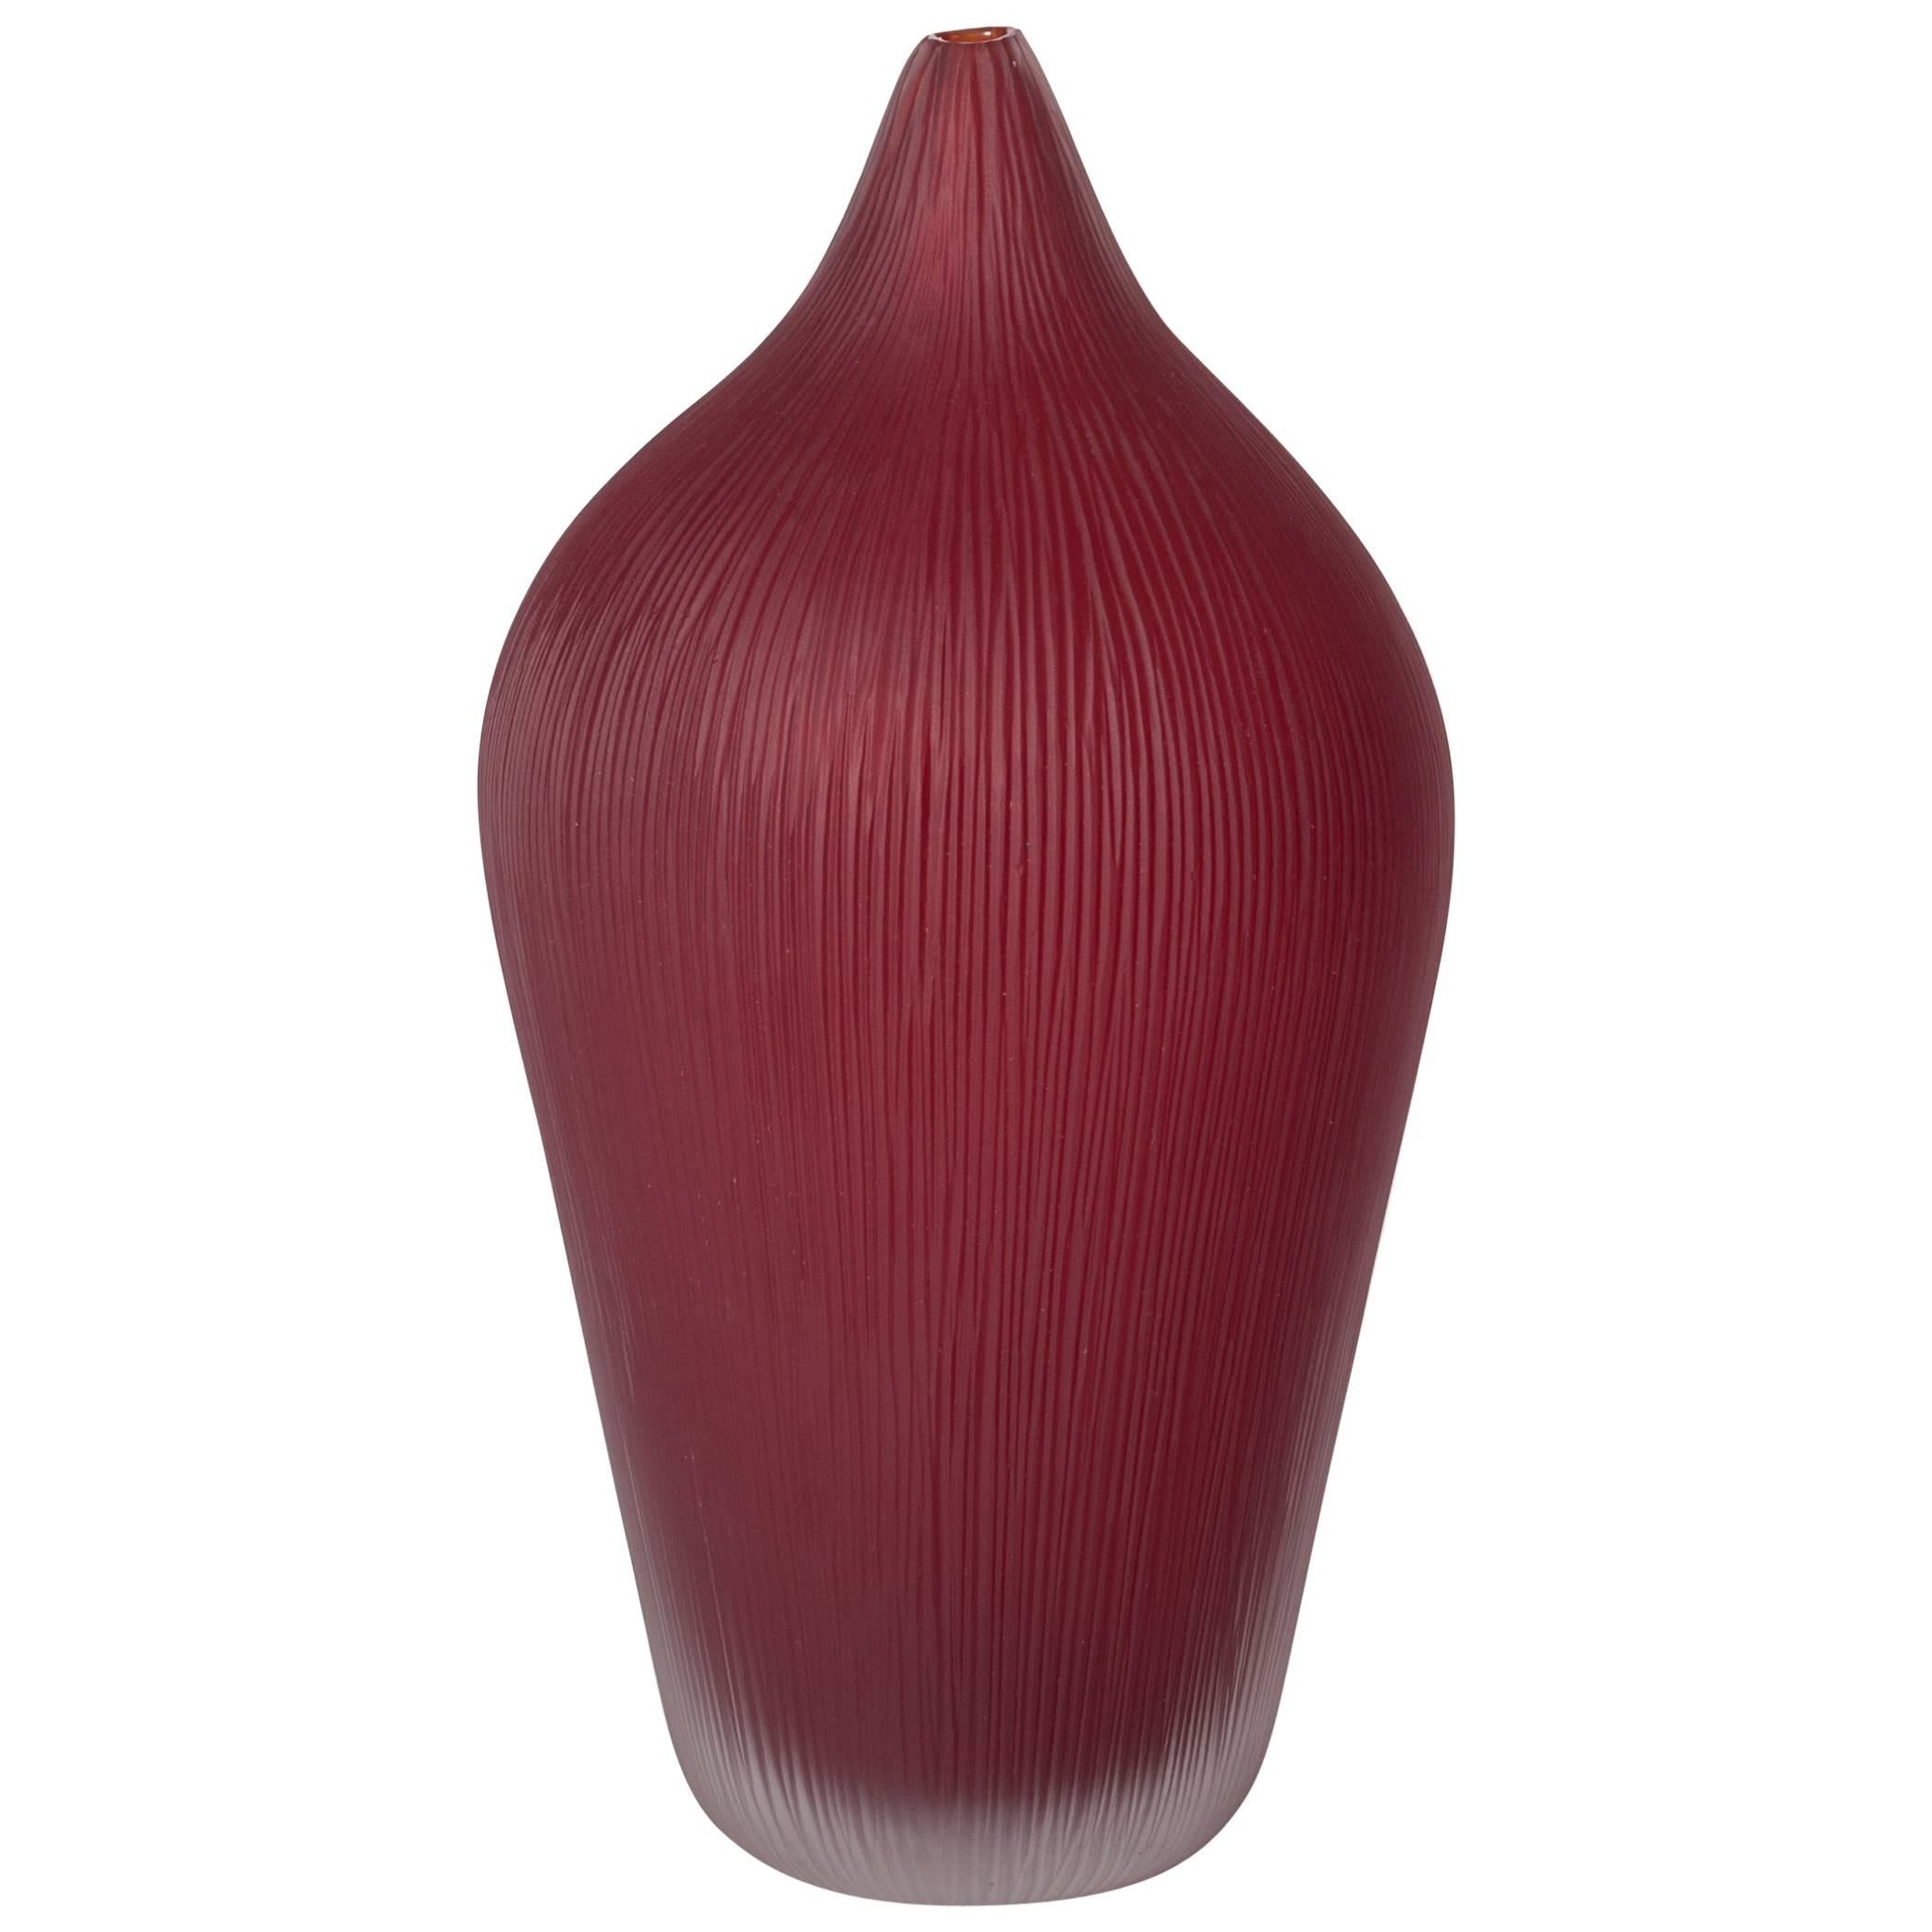 Unique Modern Italian Murano Glass Vase Deep Red Colored Sign by P. Signoretto